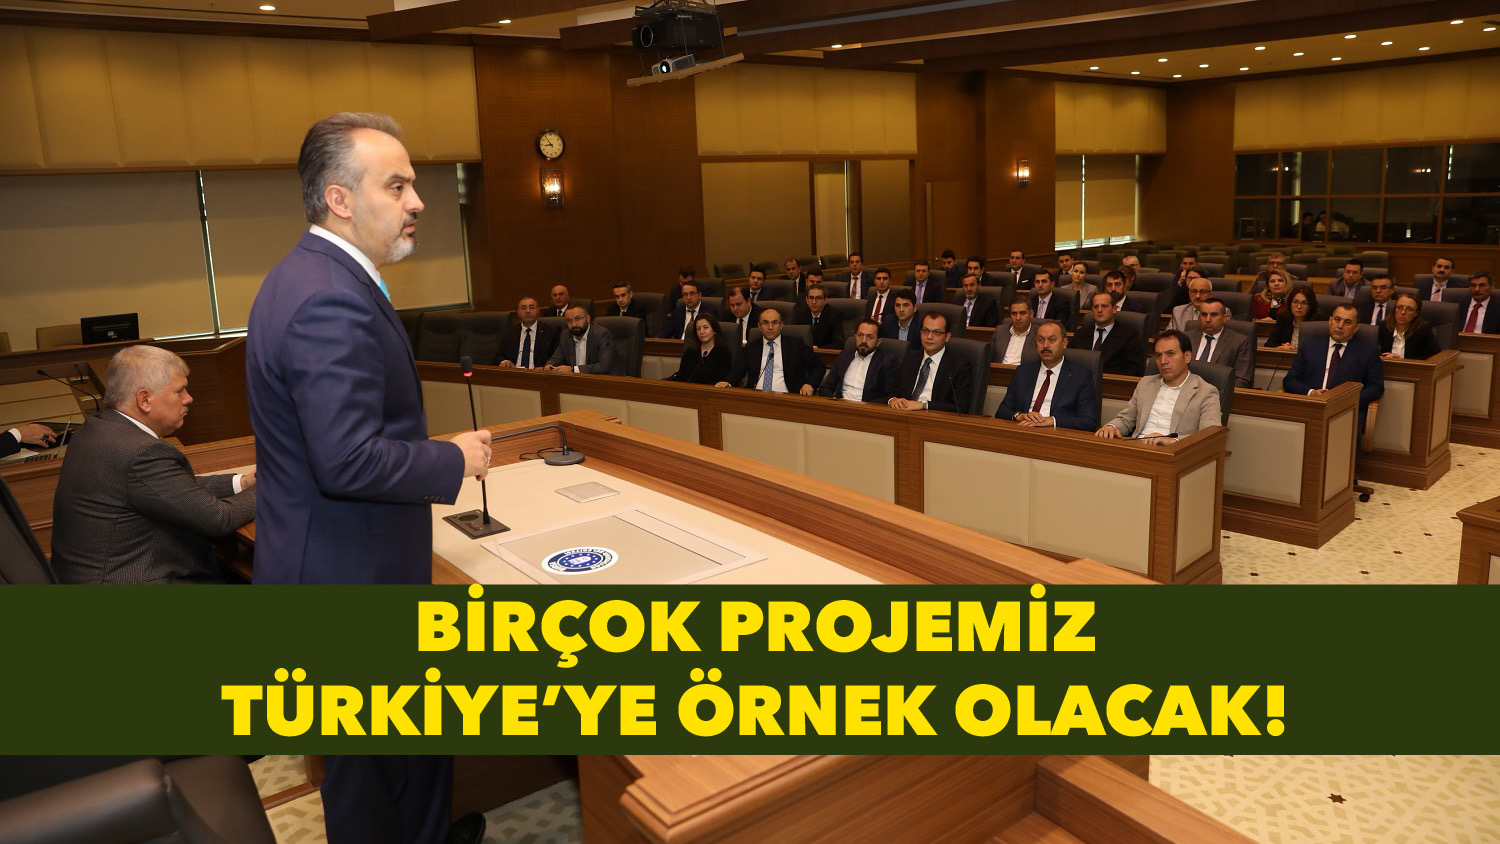 “Birçok projemiz Türkiye’ye örnek olacak”